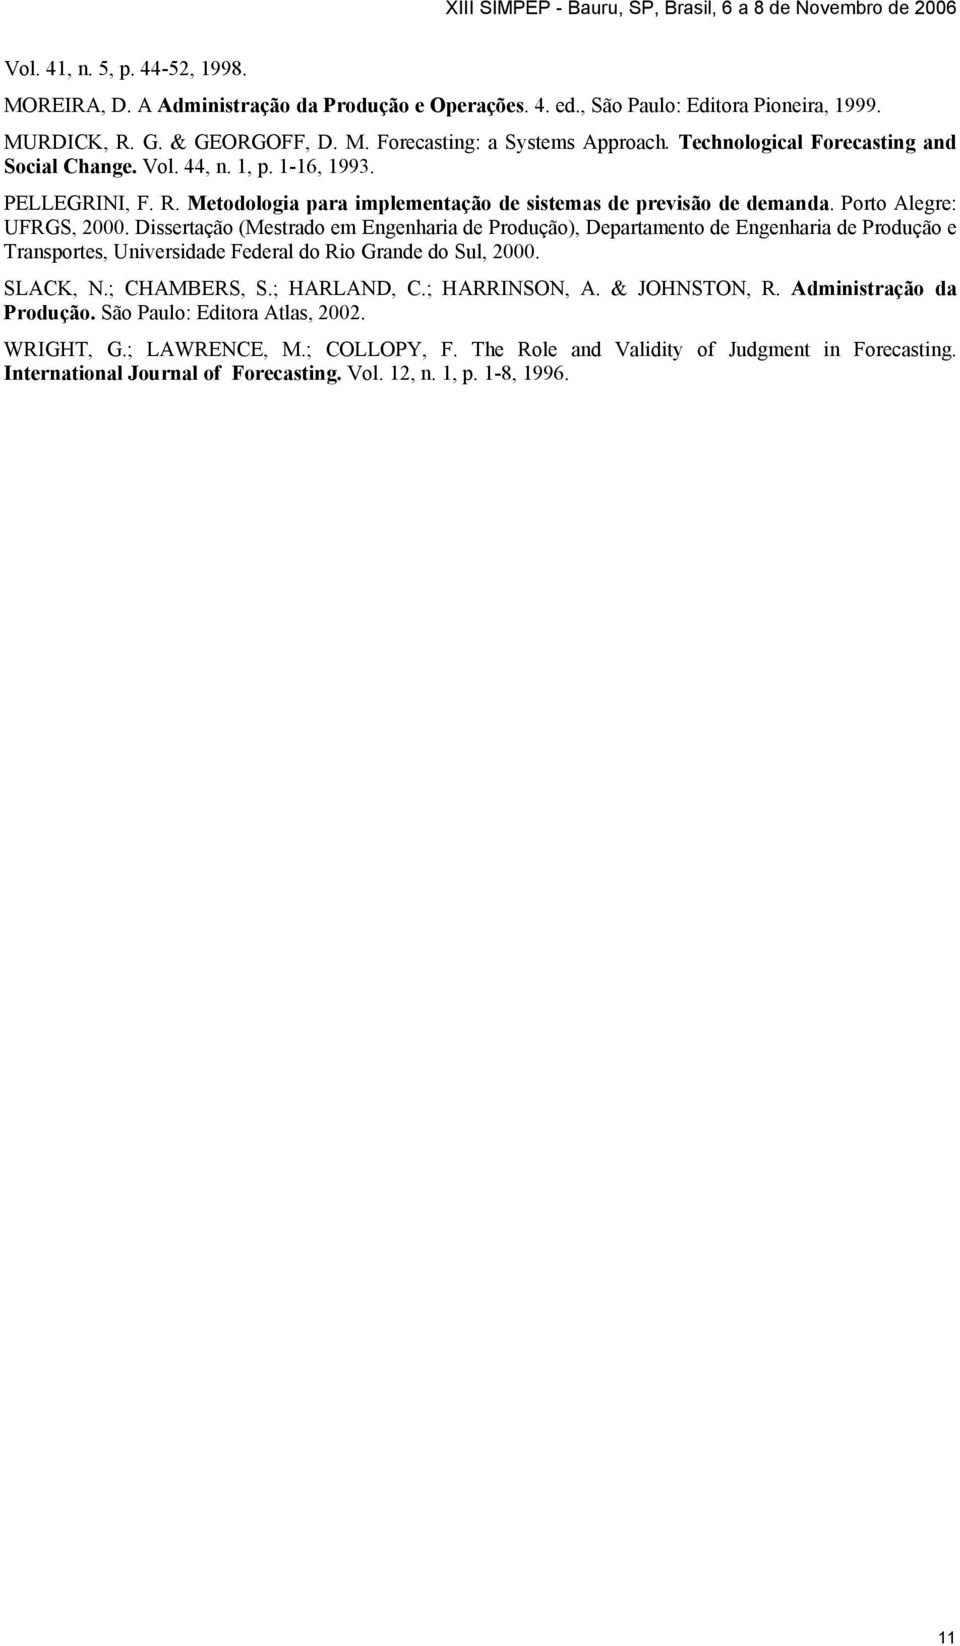 Dissertação (Mestrado em Engenharia de Produção), Departamento de Engenharia de Produção e Transportes, Universidade Federal do Rio Grande do Sul, 2000. SLACK, N.; CHAMBERS, S.; HARLAND, C.